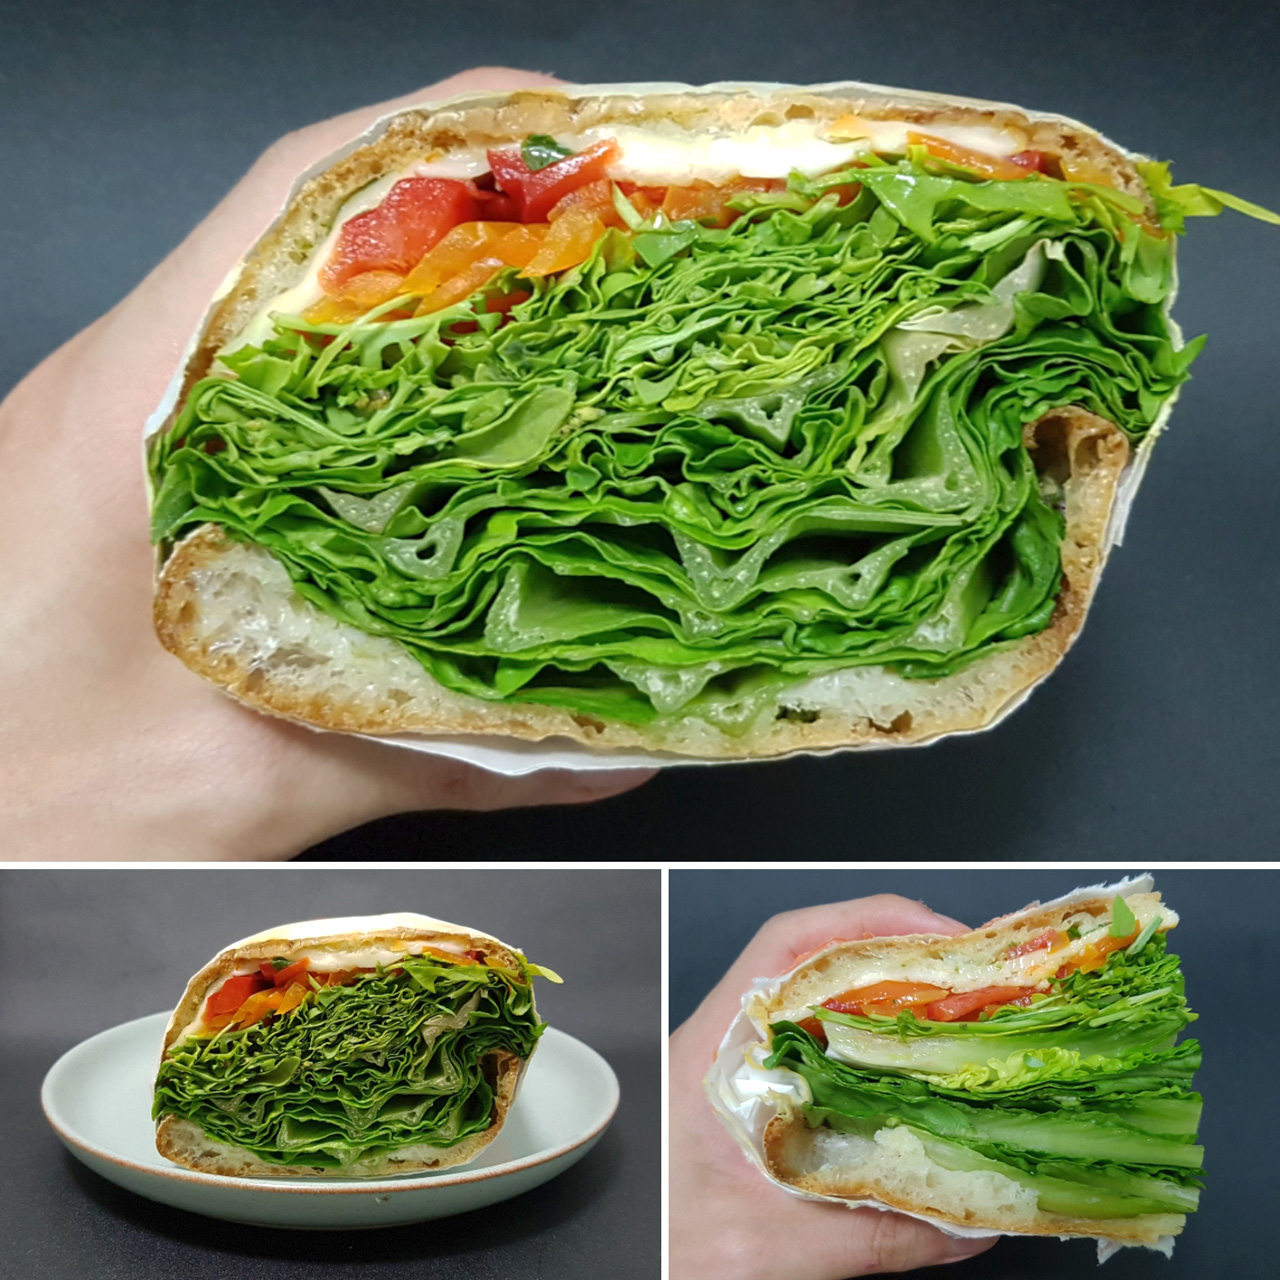 보기만해도 건강해지는 샌드위치다.